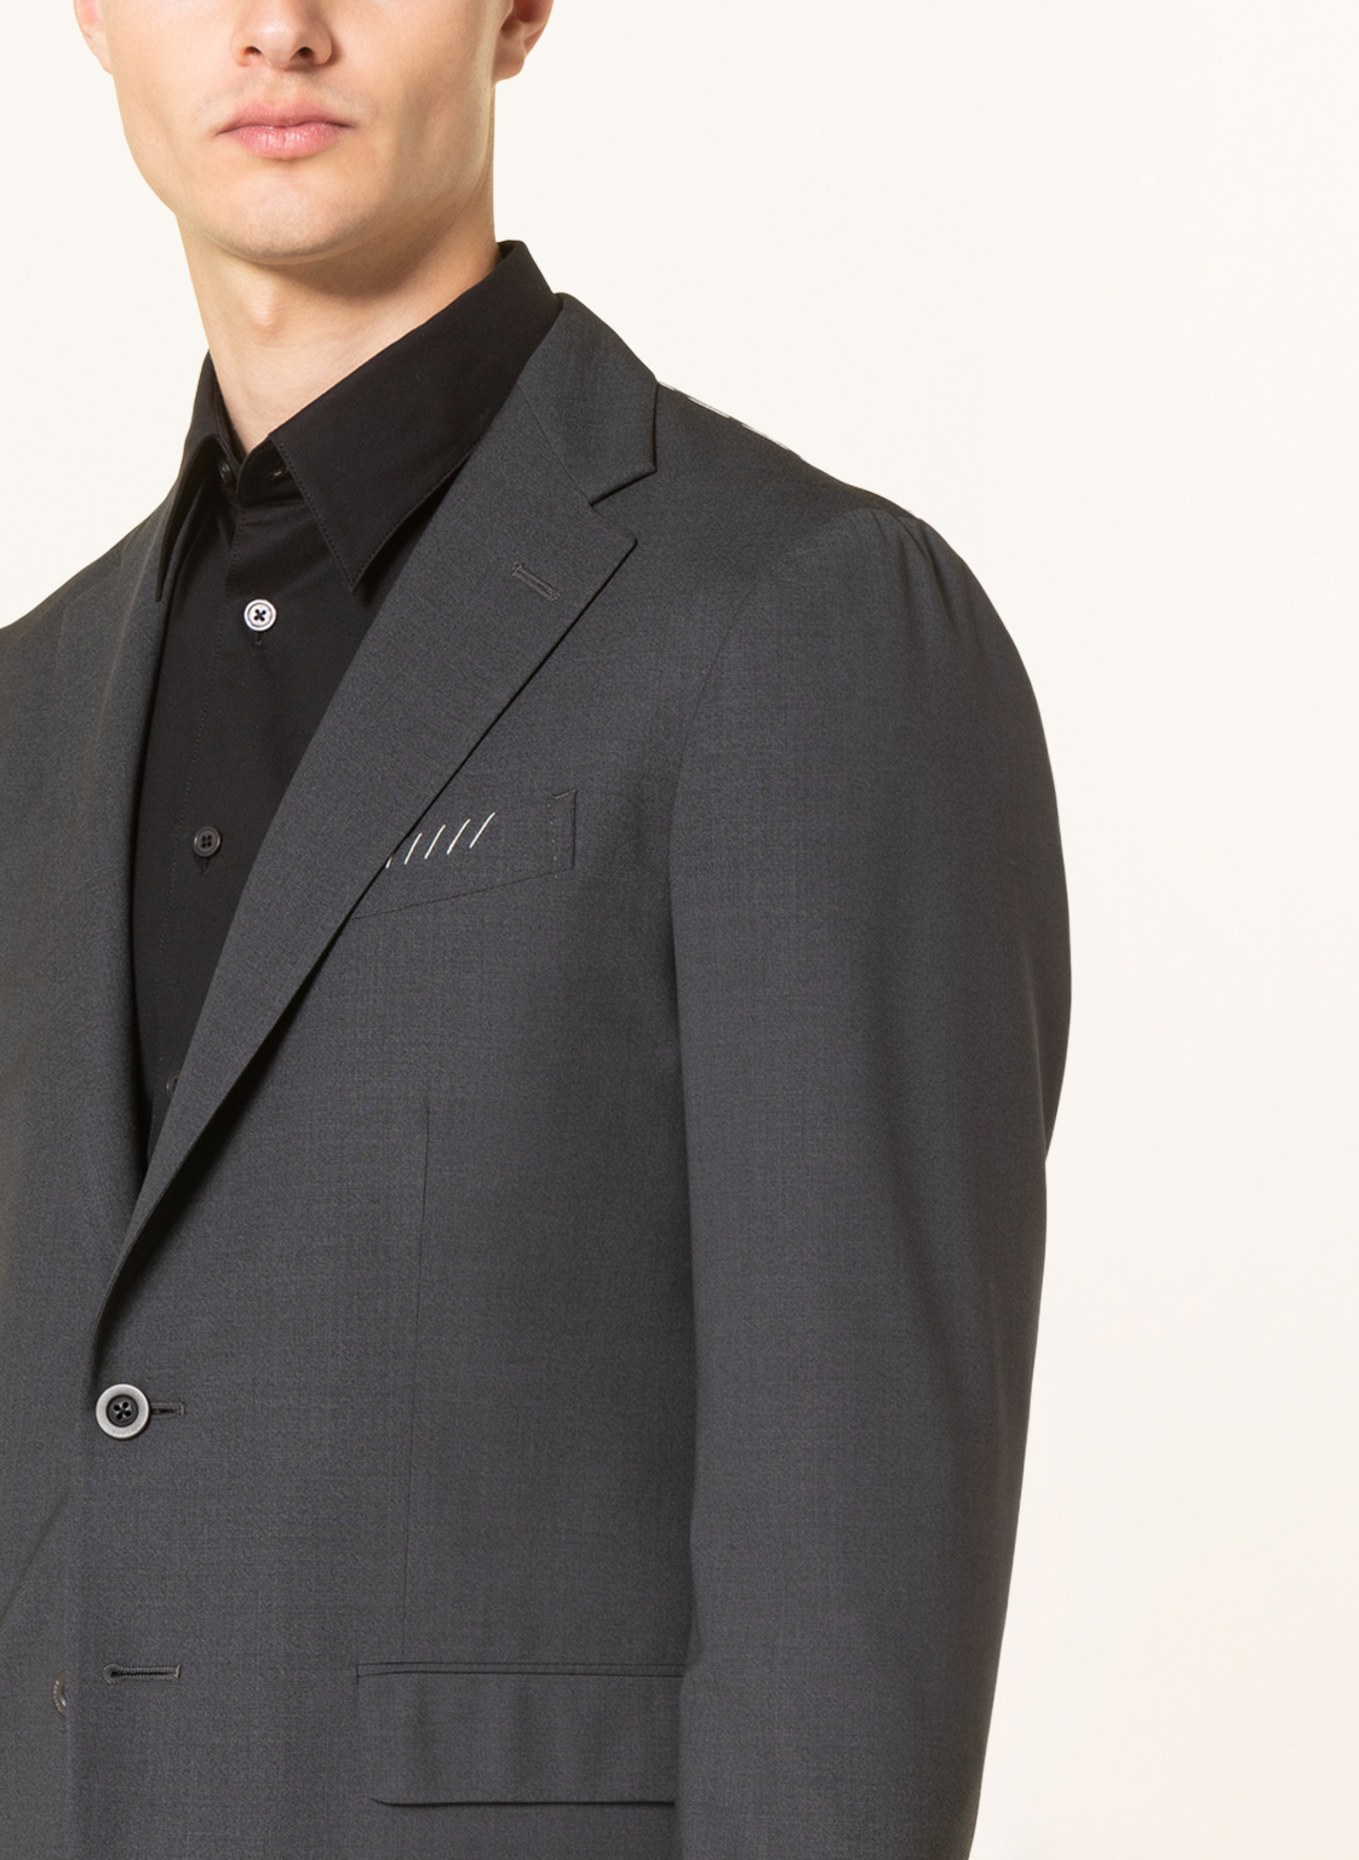 BOGLIOLI Suit jacket extra slim fit, Color: 890 Anthra (Image 8)